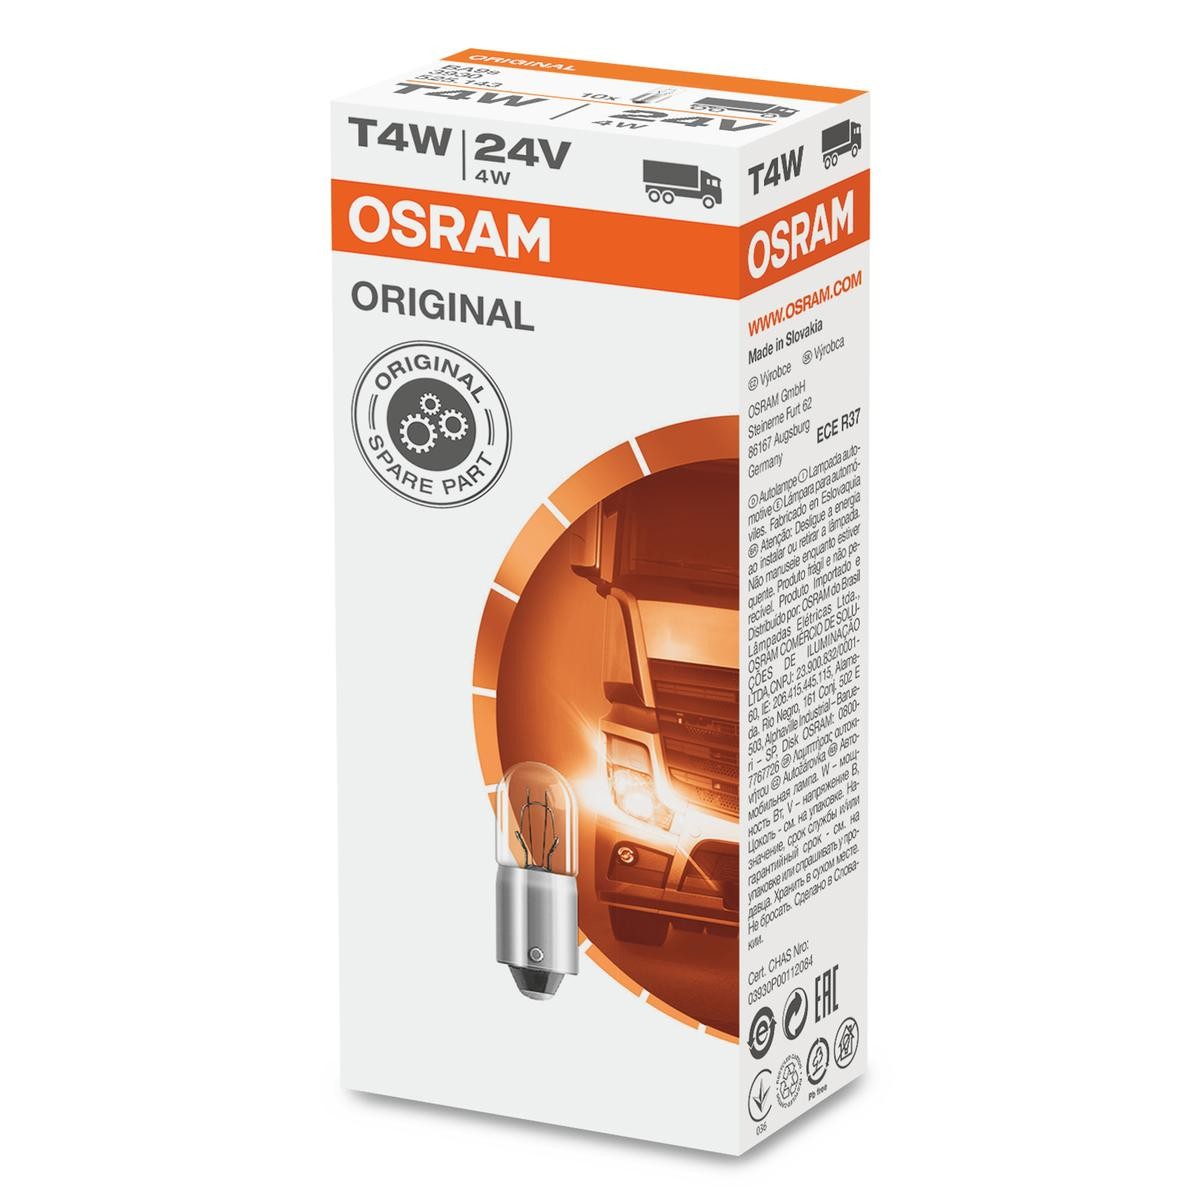 OSRAM ORIGINAL LINE 3930 Bulb, indicator 24V 4W, T4W